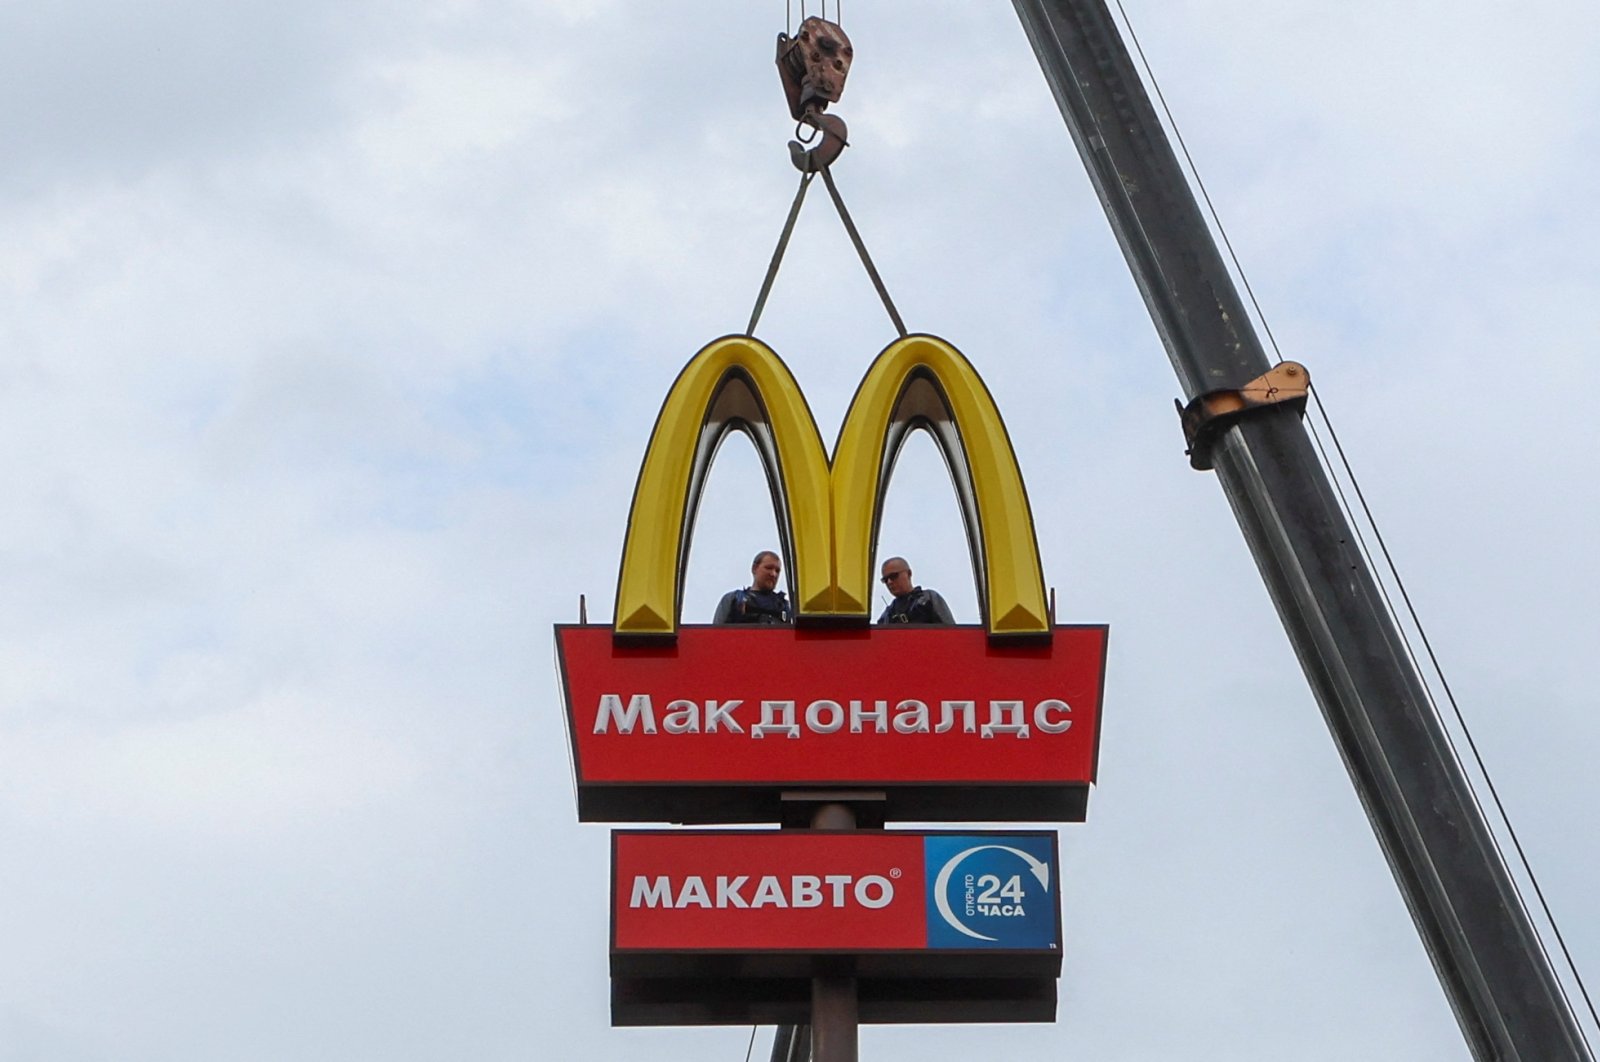 Goodbye Golden Arches: mengubah nama McDonald’s untuk dibuka kembali di Rusia